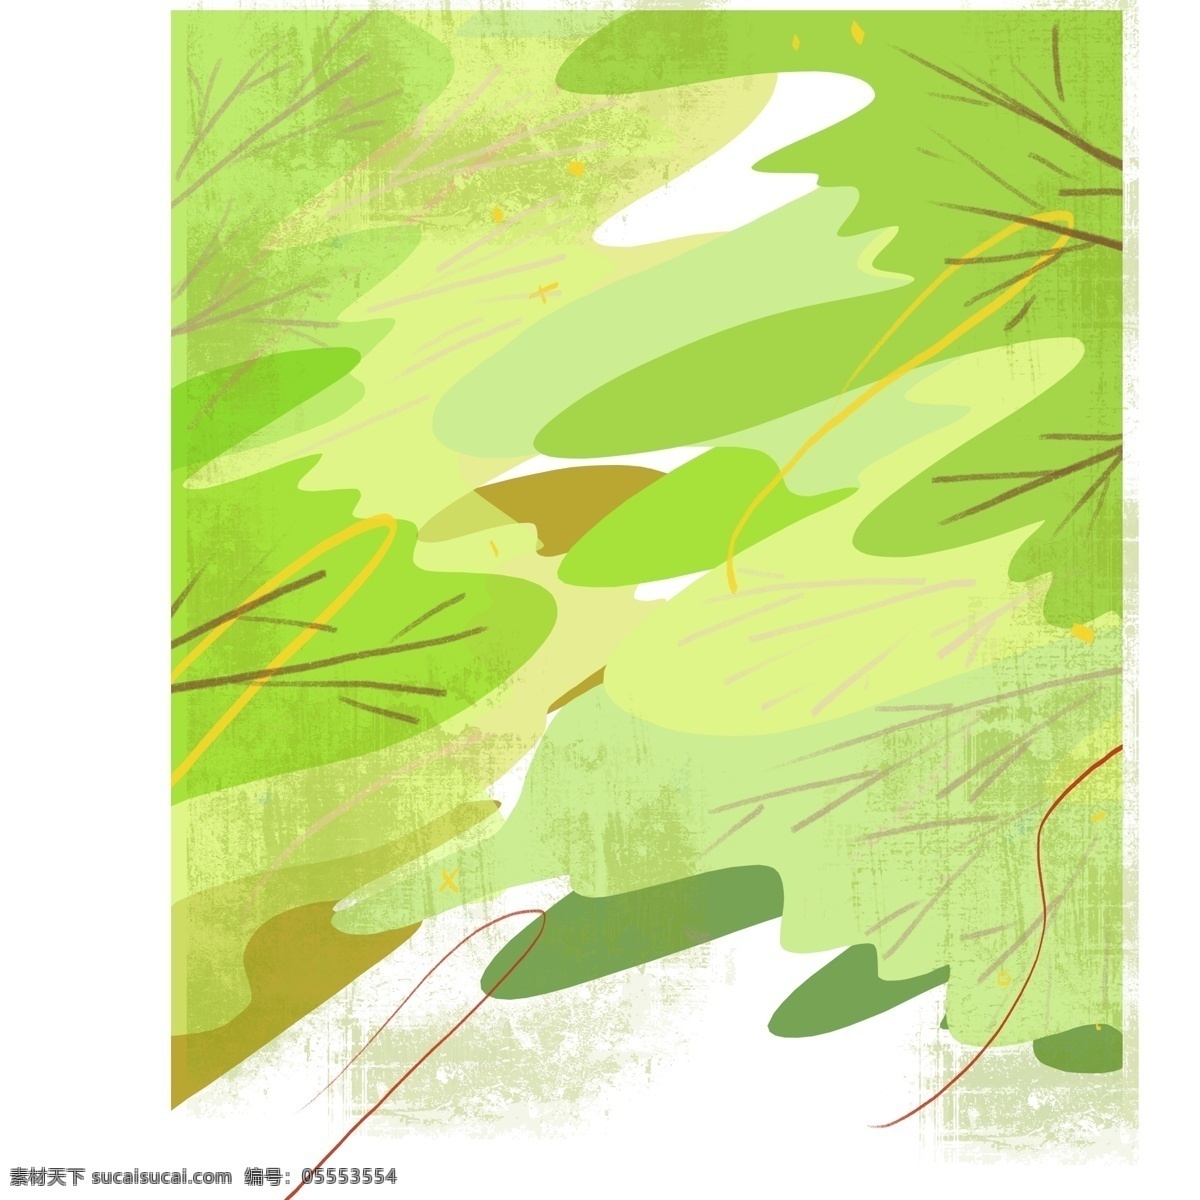 小 清新 绿色 装饰画 绿色森林 森林 绿色背景 小清新森林 卡通手绘森林